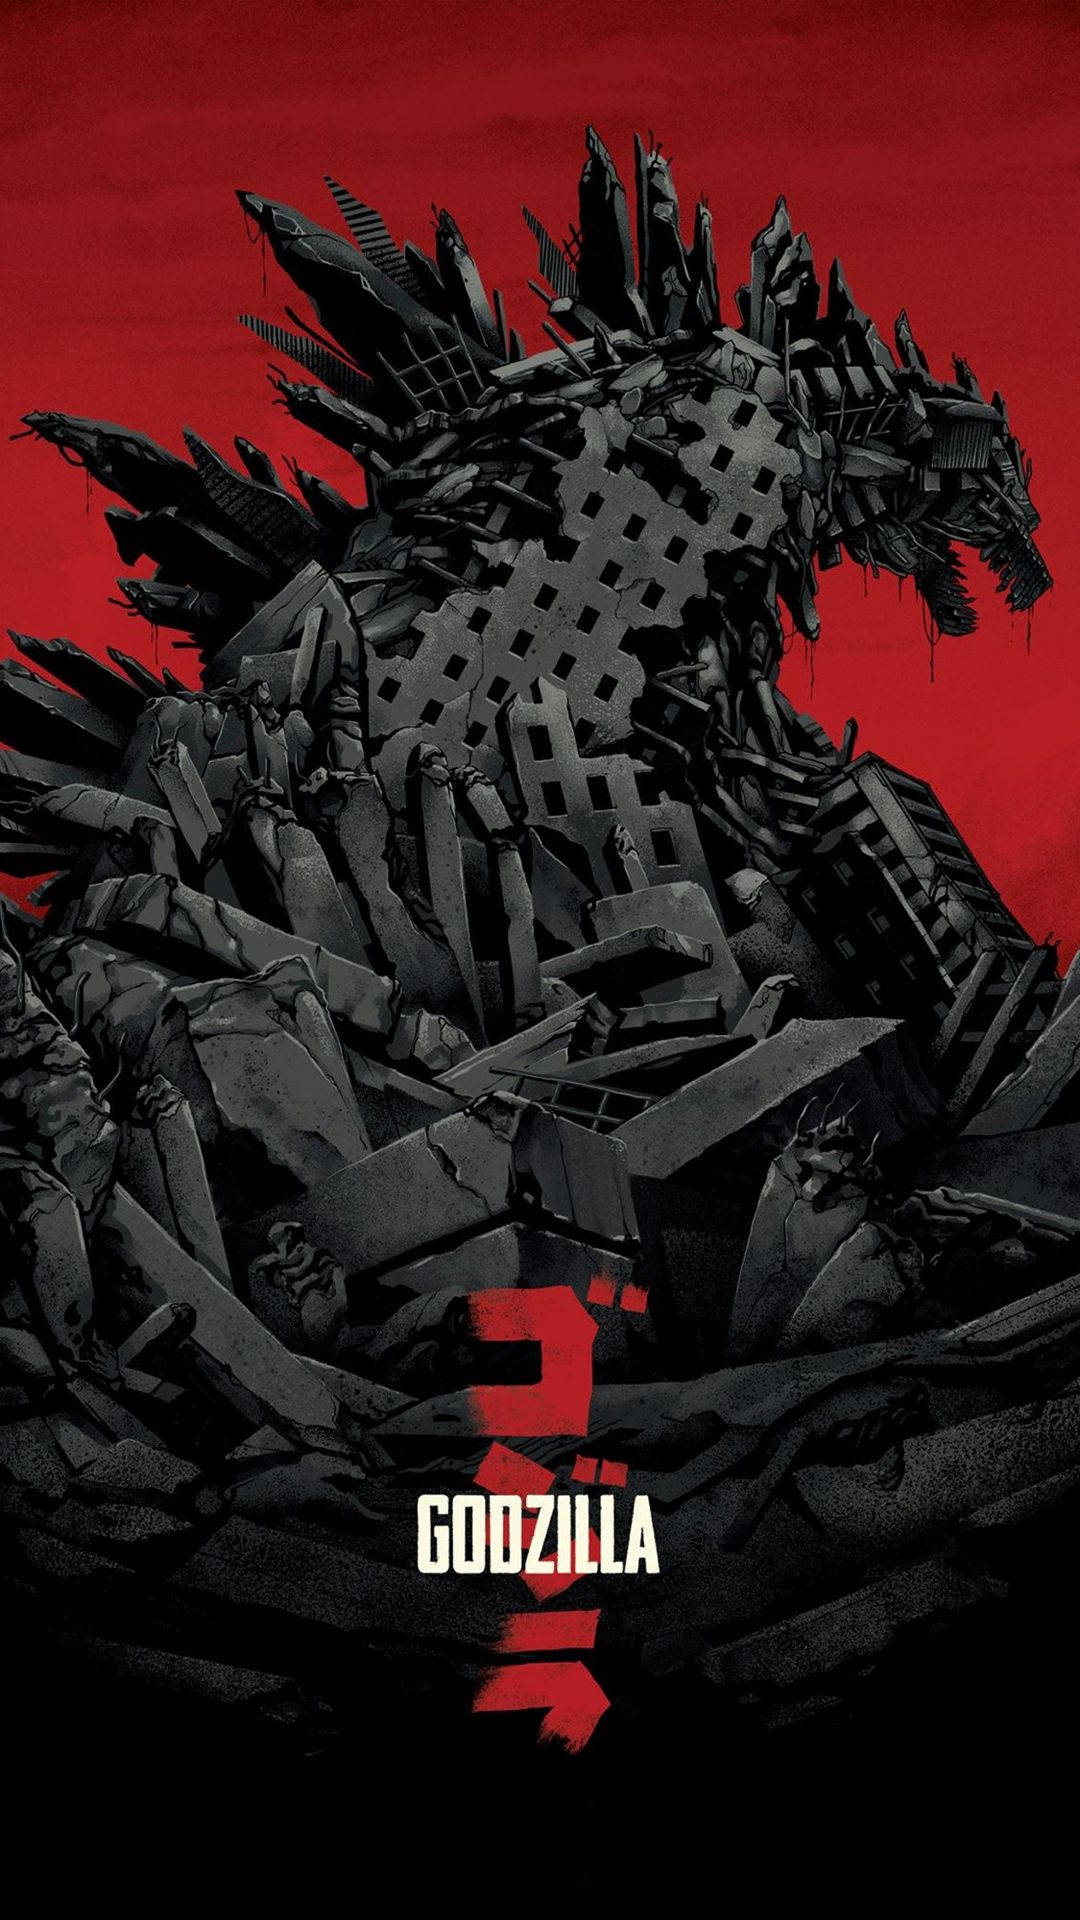 1080X1920 Godzilla Wallpaper and Background